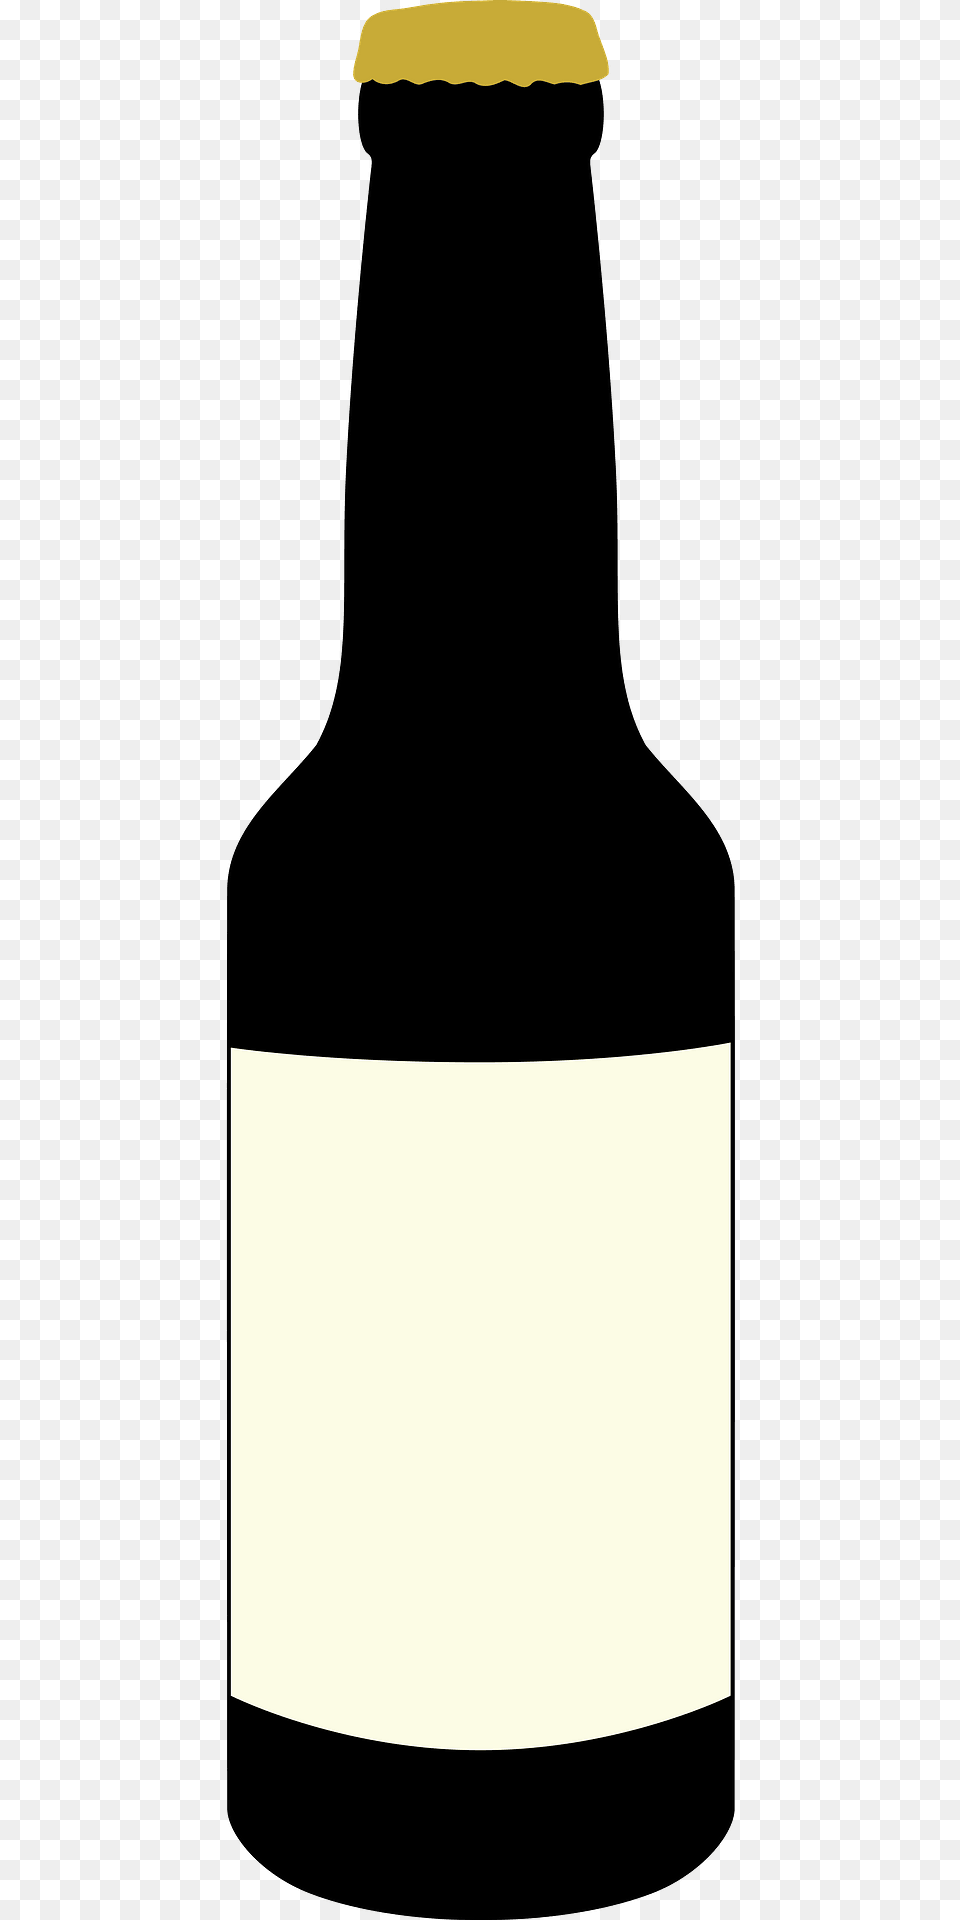 Glass Beer Bottle Clipart, Alcohol, Beer Bottle, Beverage, Liquor Free Png